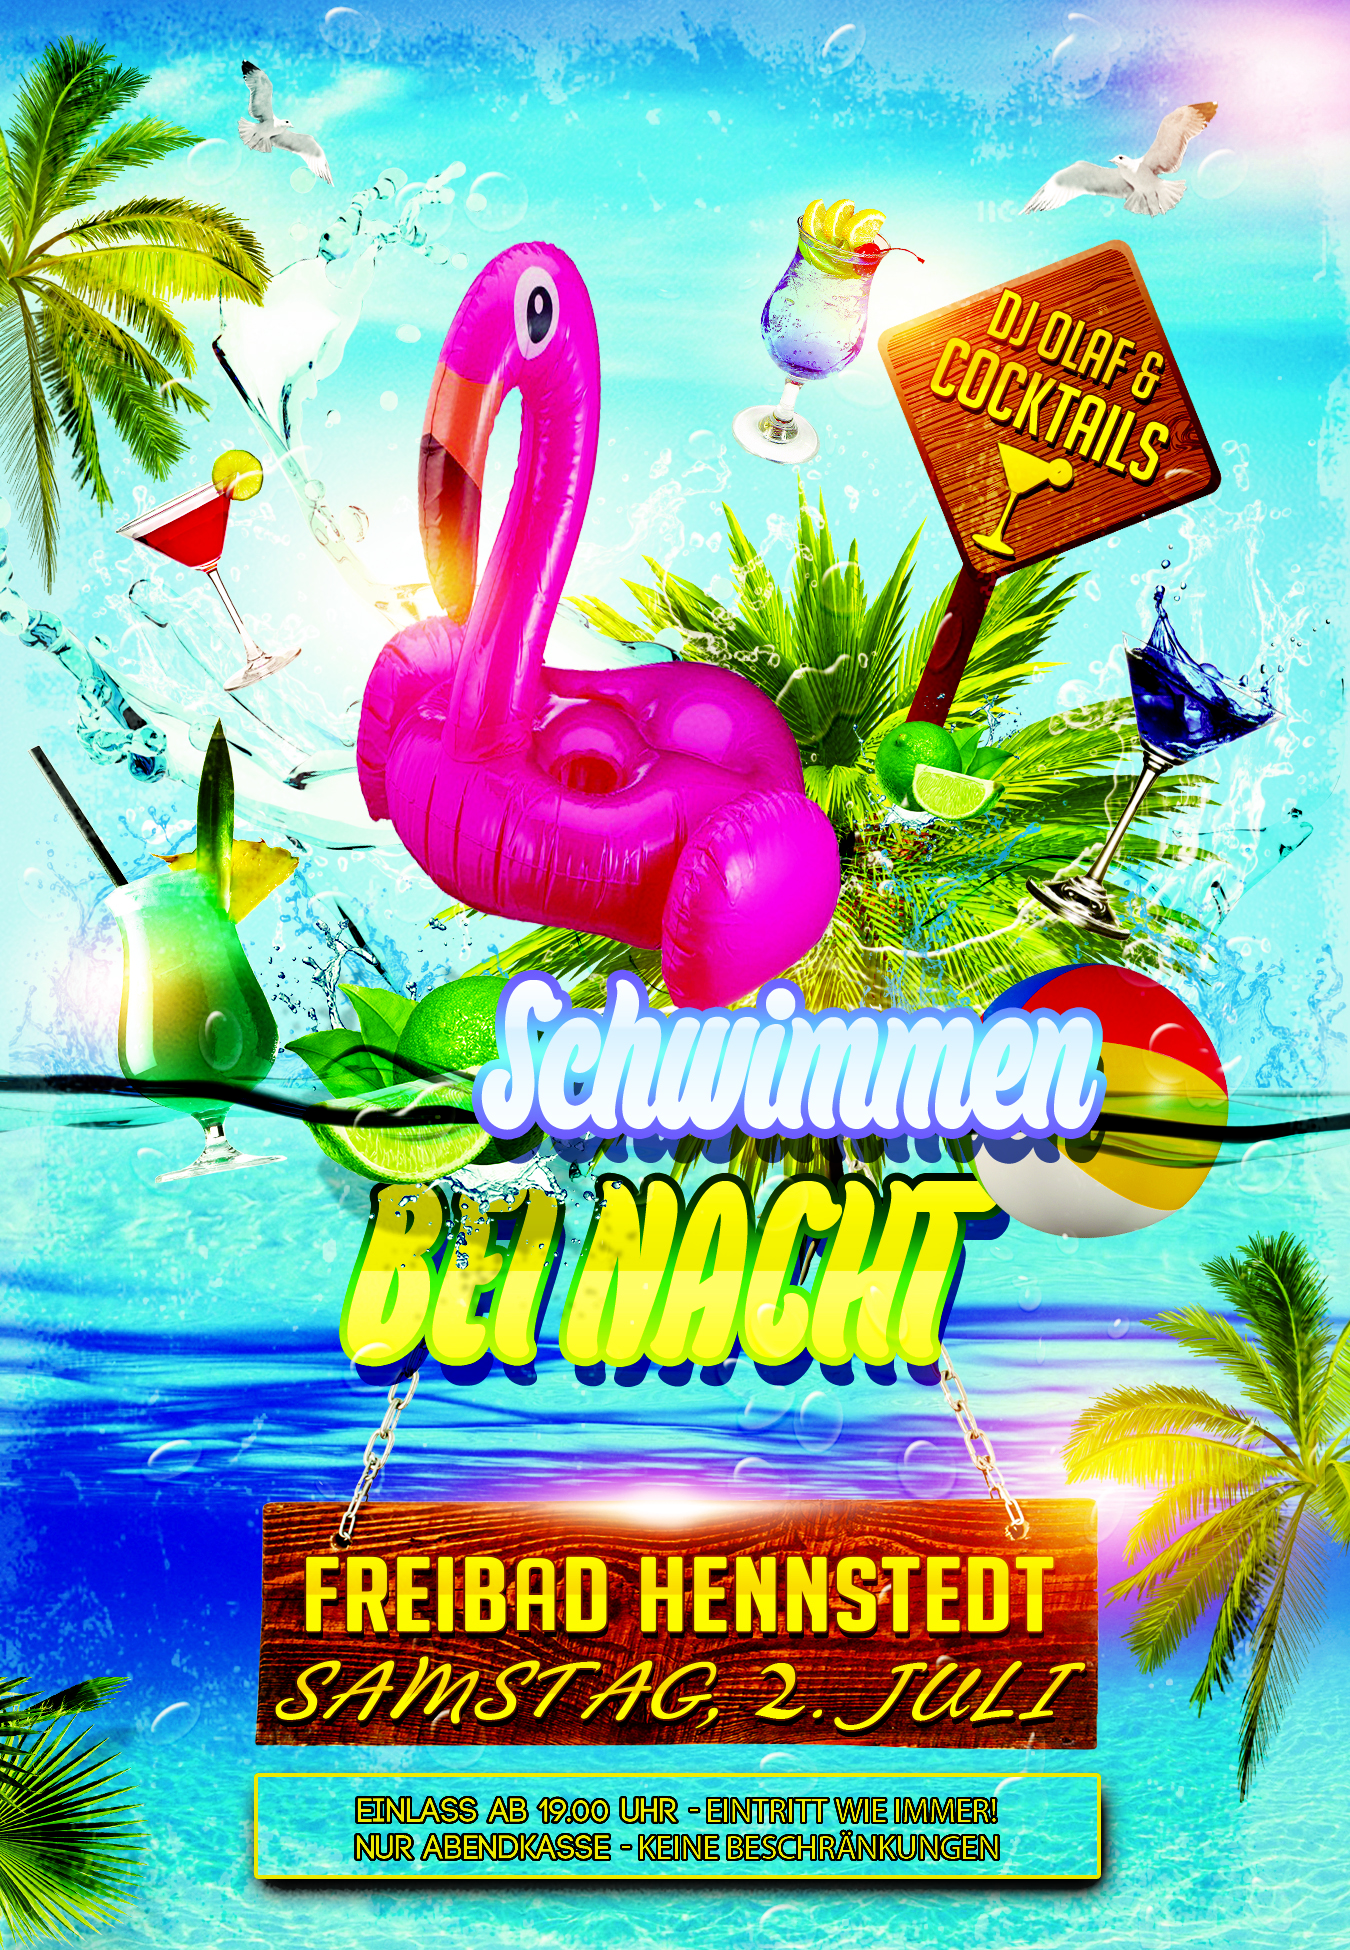 Veranstaltung Schwimmbad Hennstedt